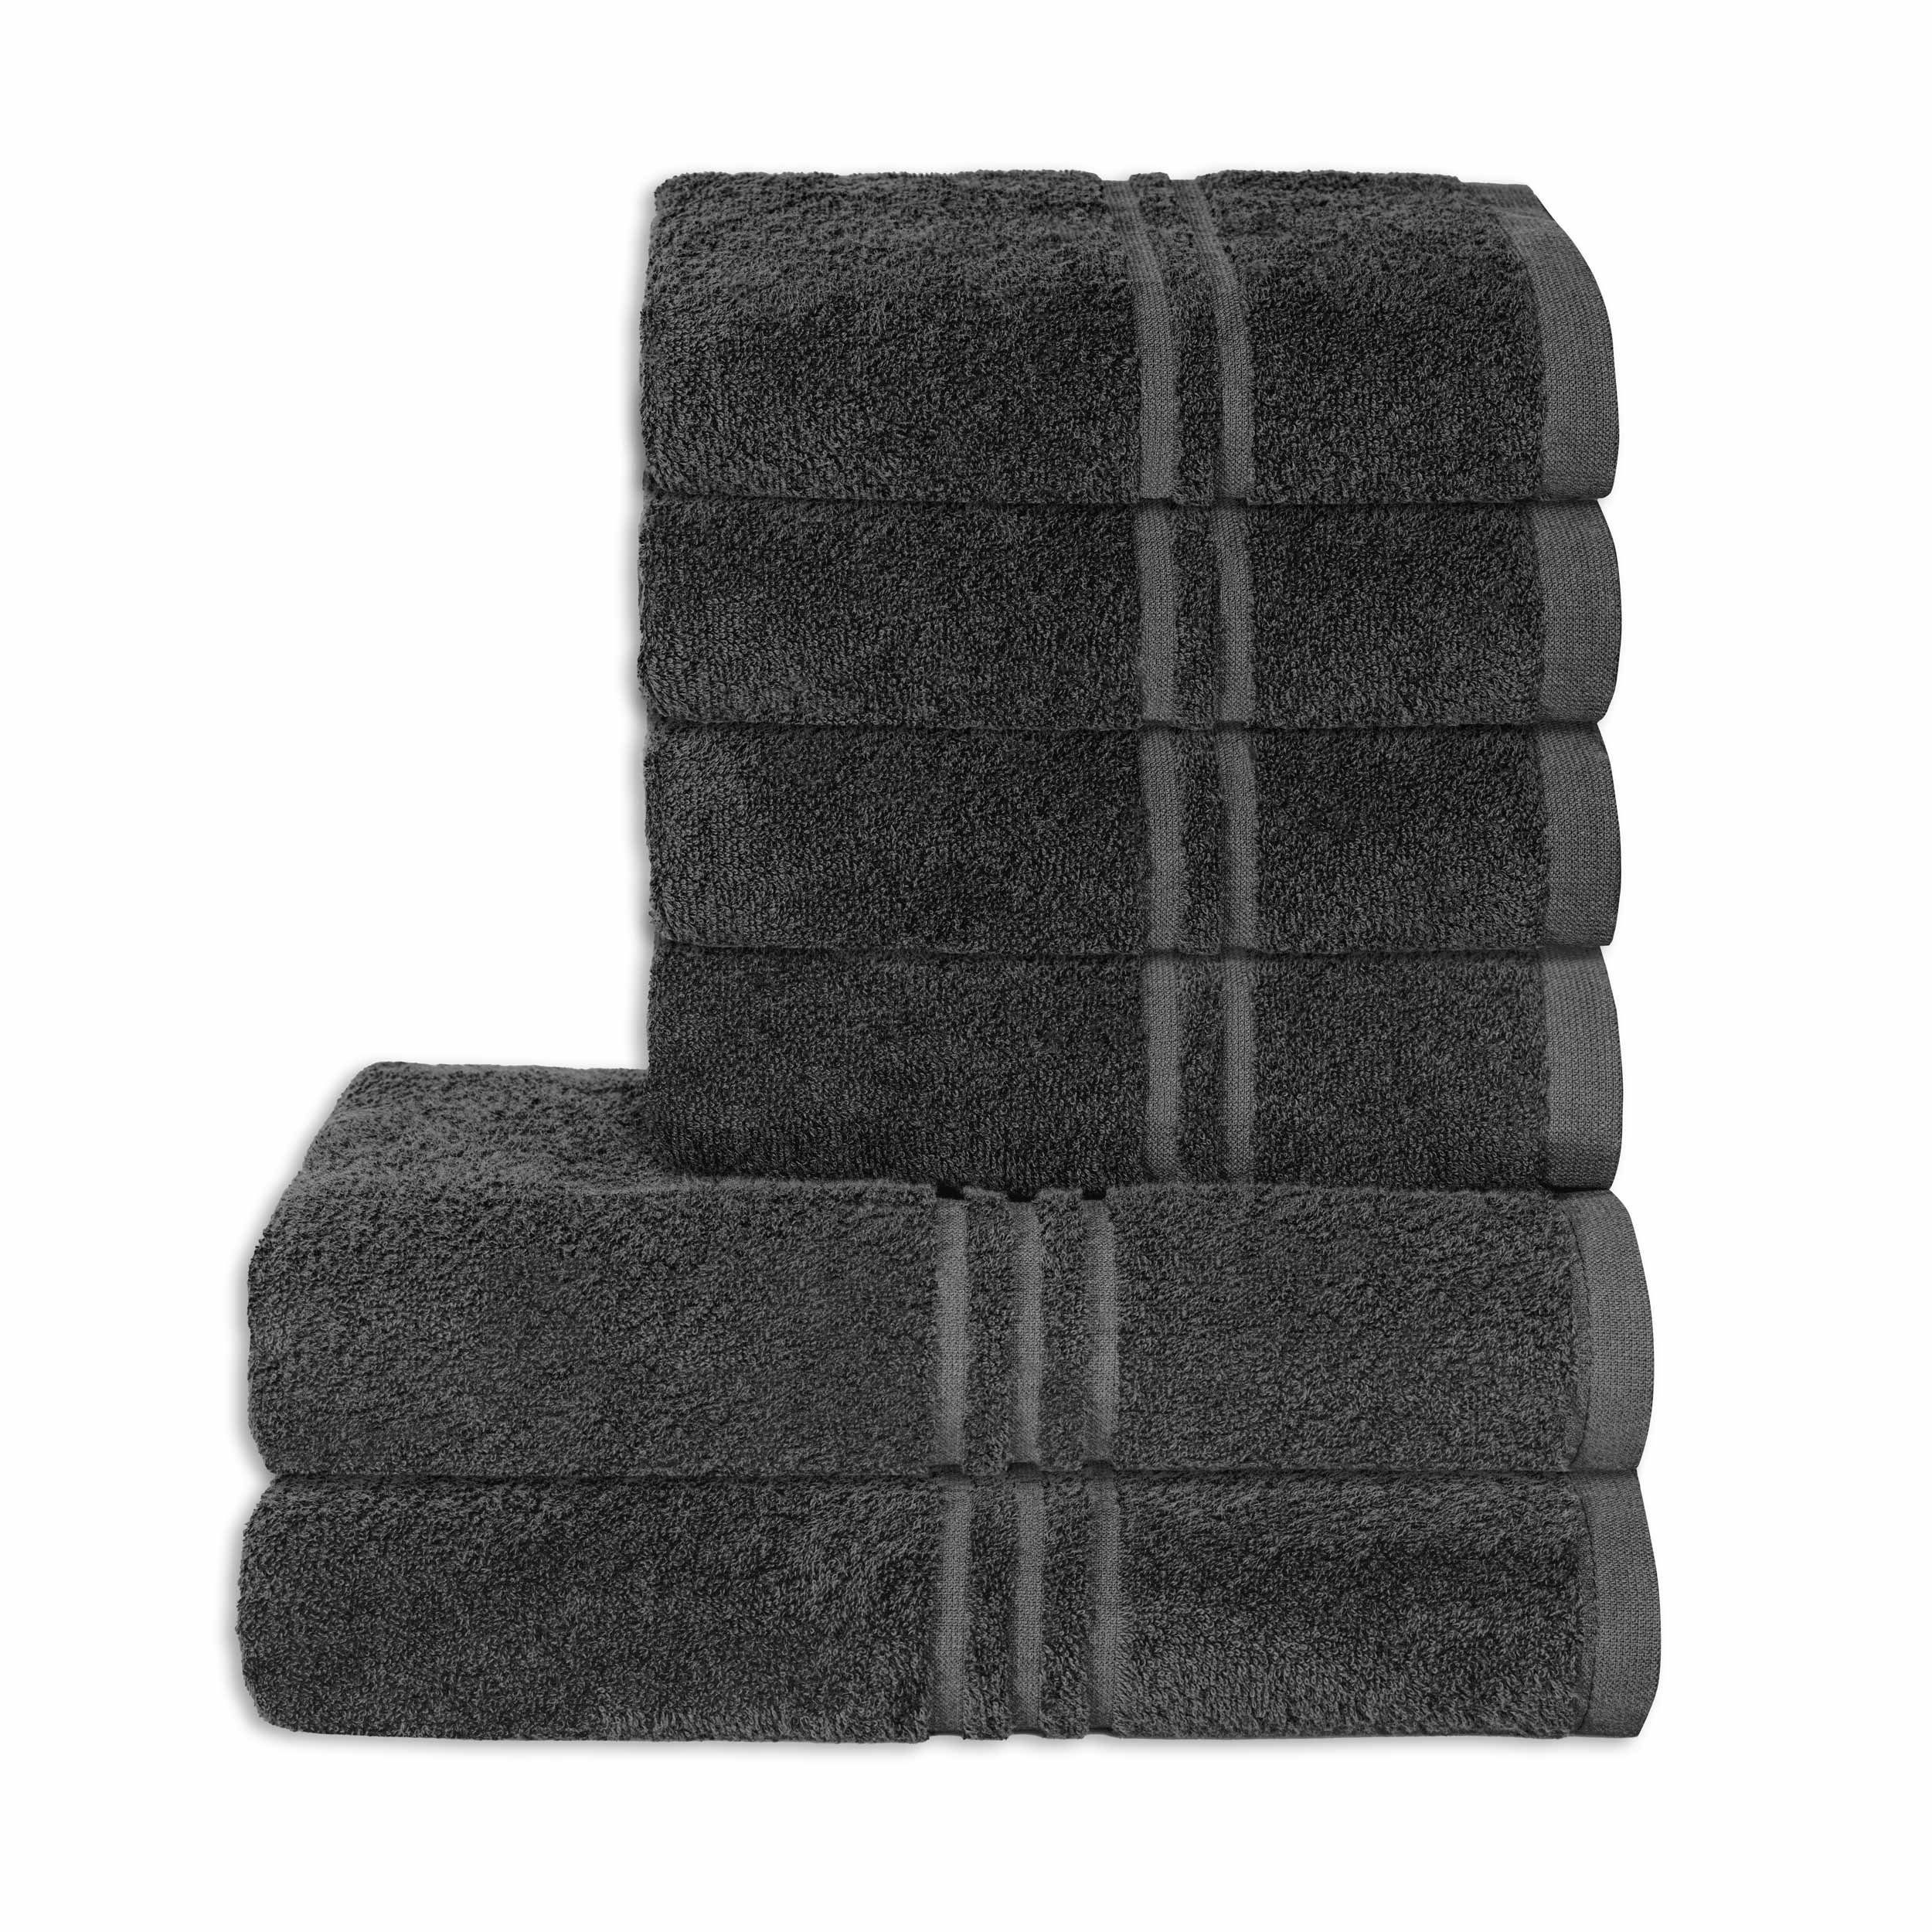 Badetücher Qualität Premium 6-teilig Set anthrazit 100% Baumwolle aurora Objektwäsche Handtuch Baumwolle, Rio